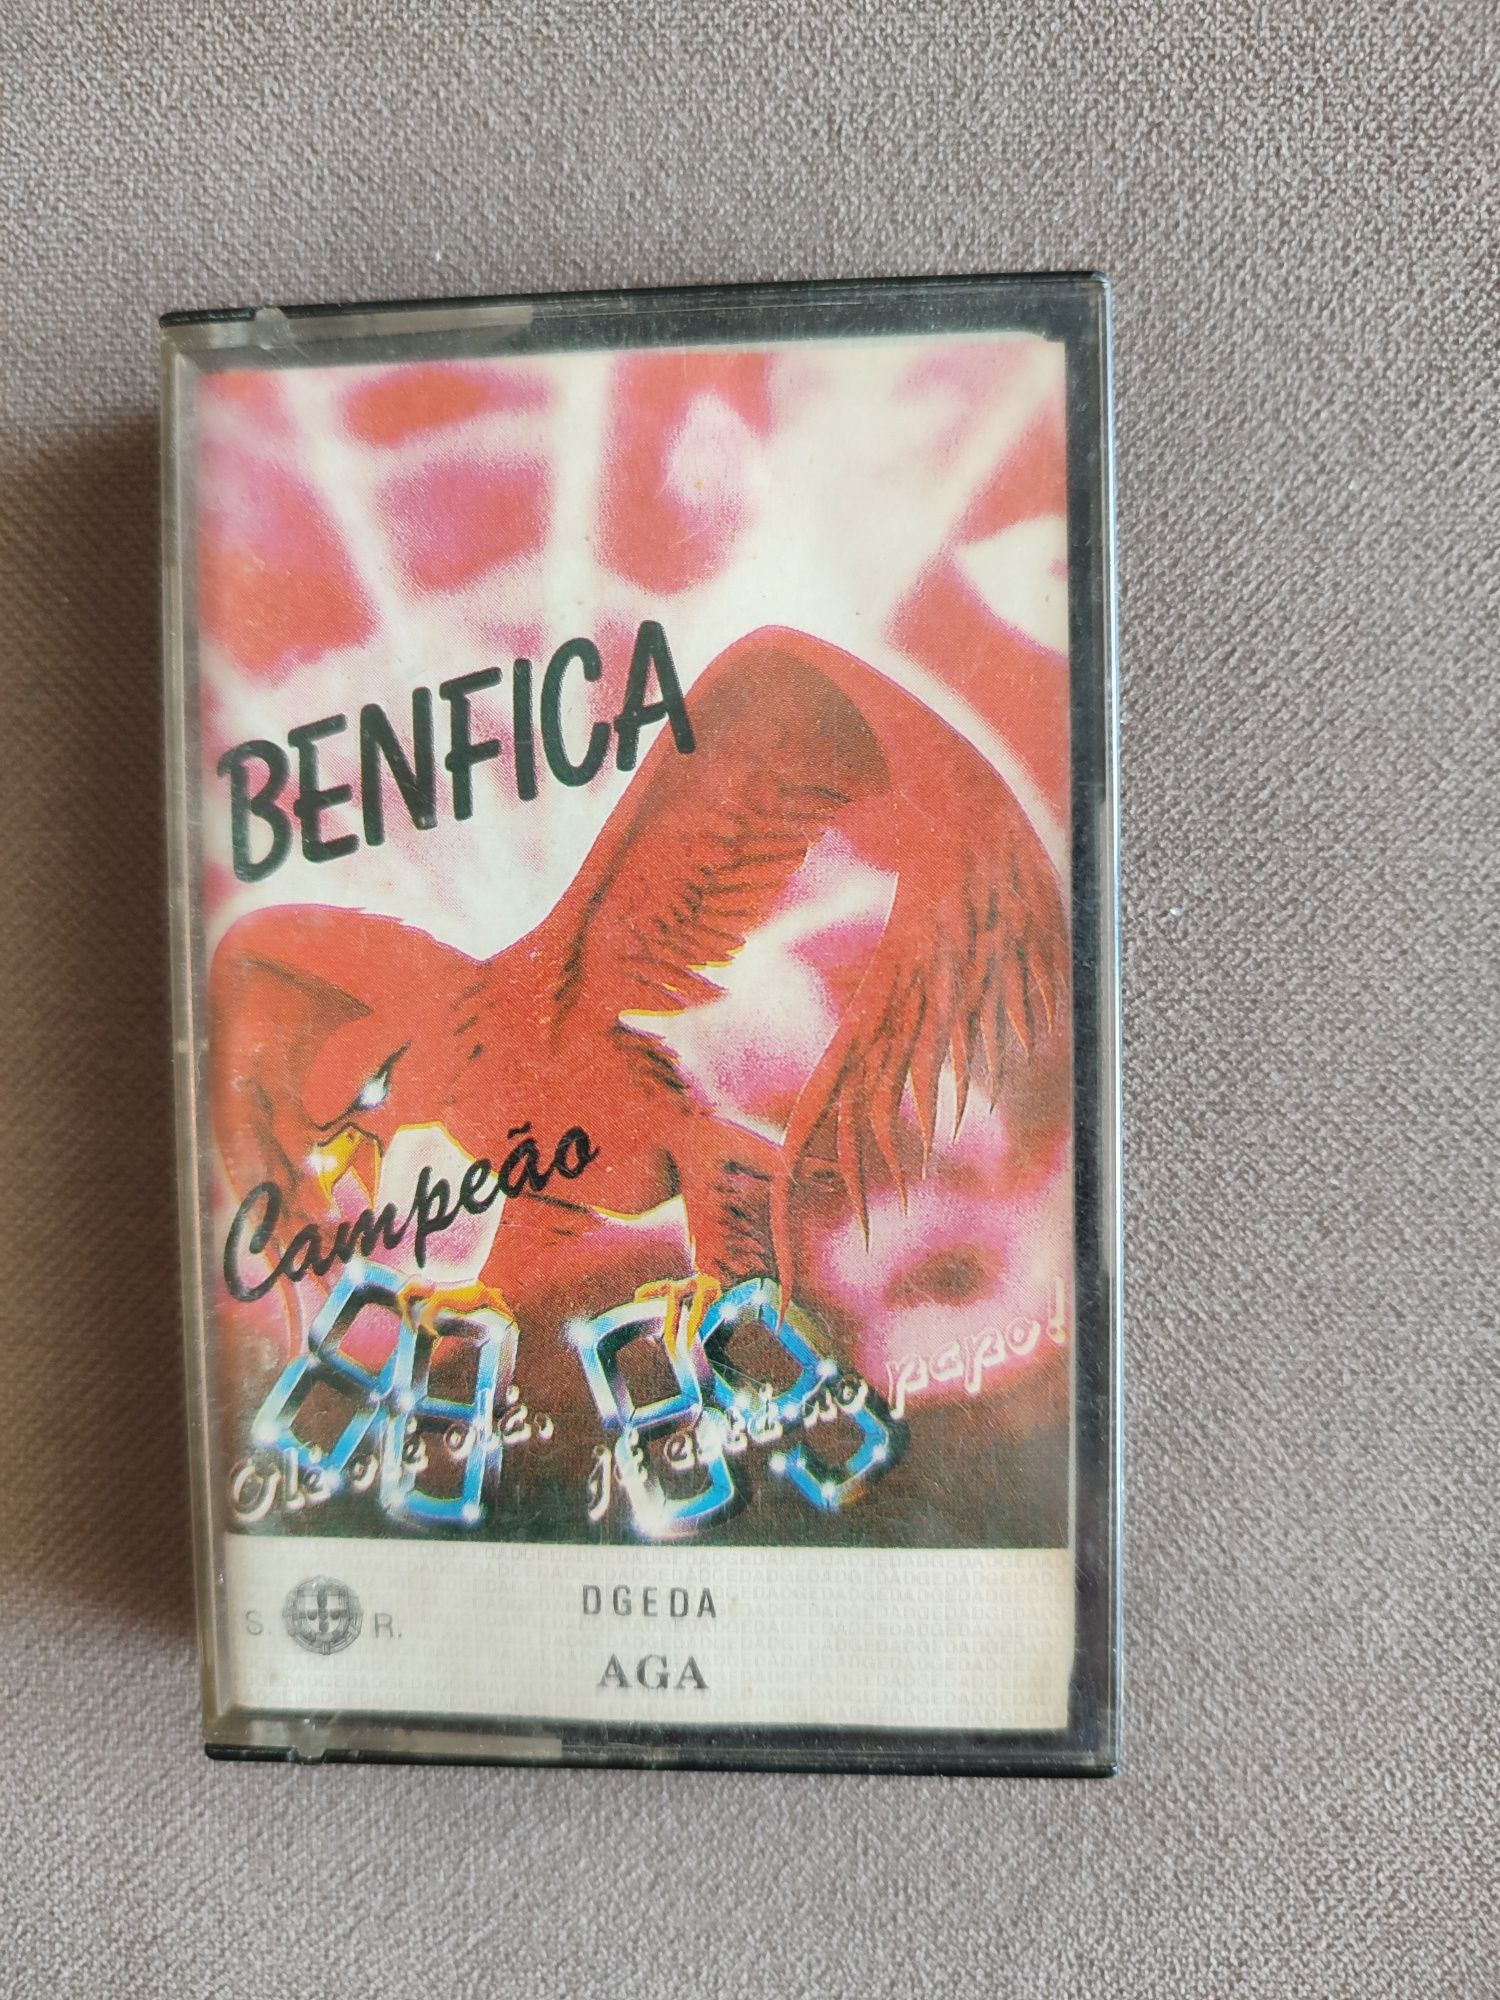 Cassete Benfica campeão 88/89